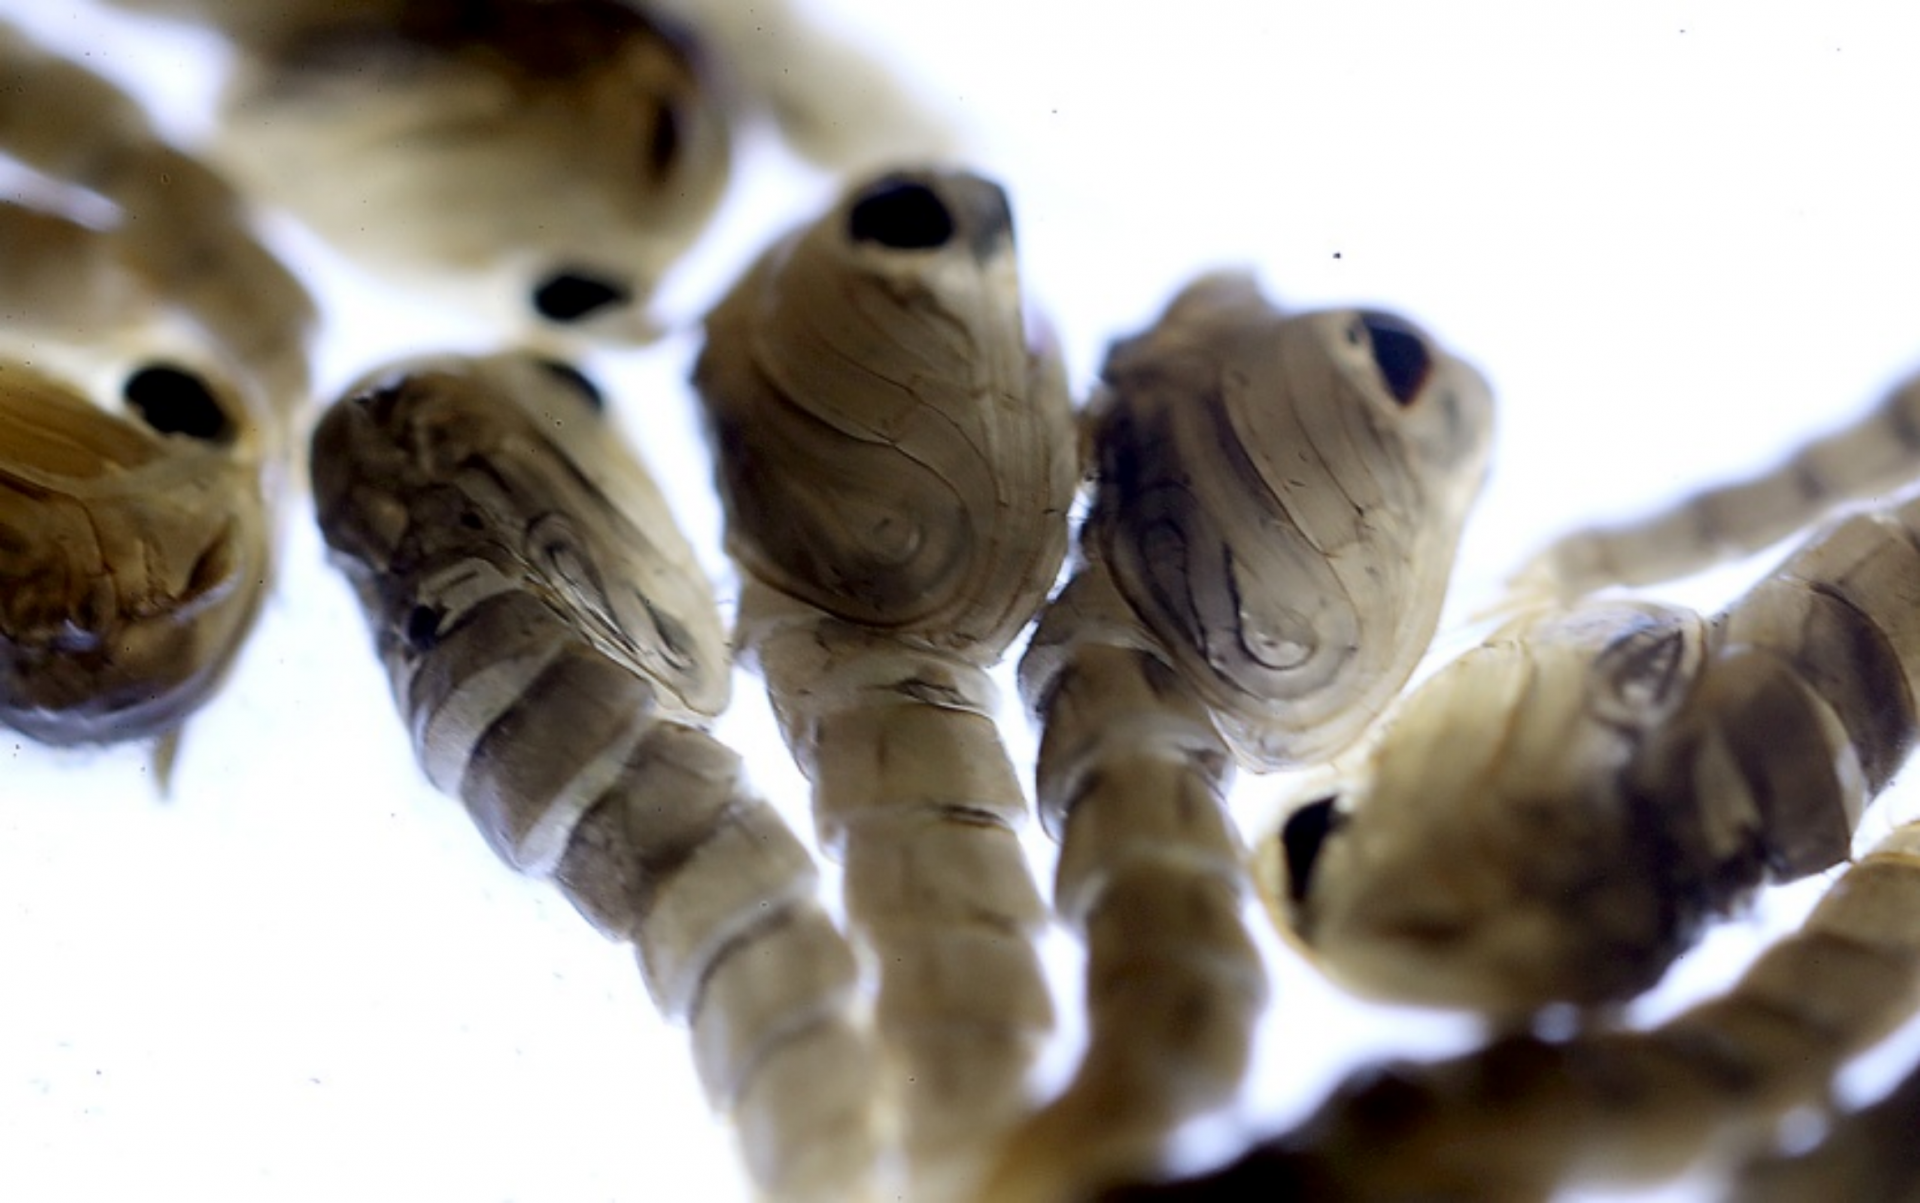 生产绝育蚊子的第三步:分离雌雄蚊蛹幼虫经过多次蜕皮发育变成蚊蛹